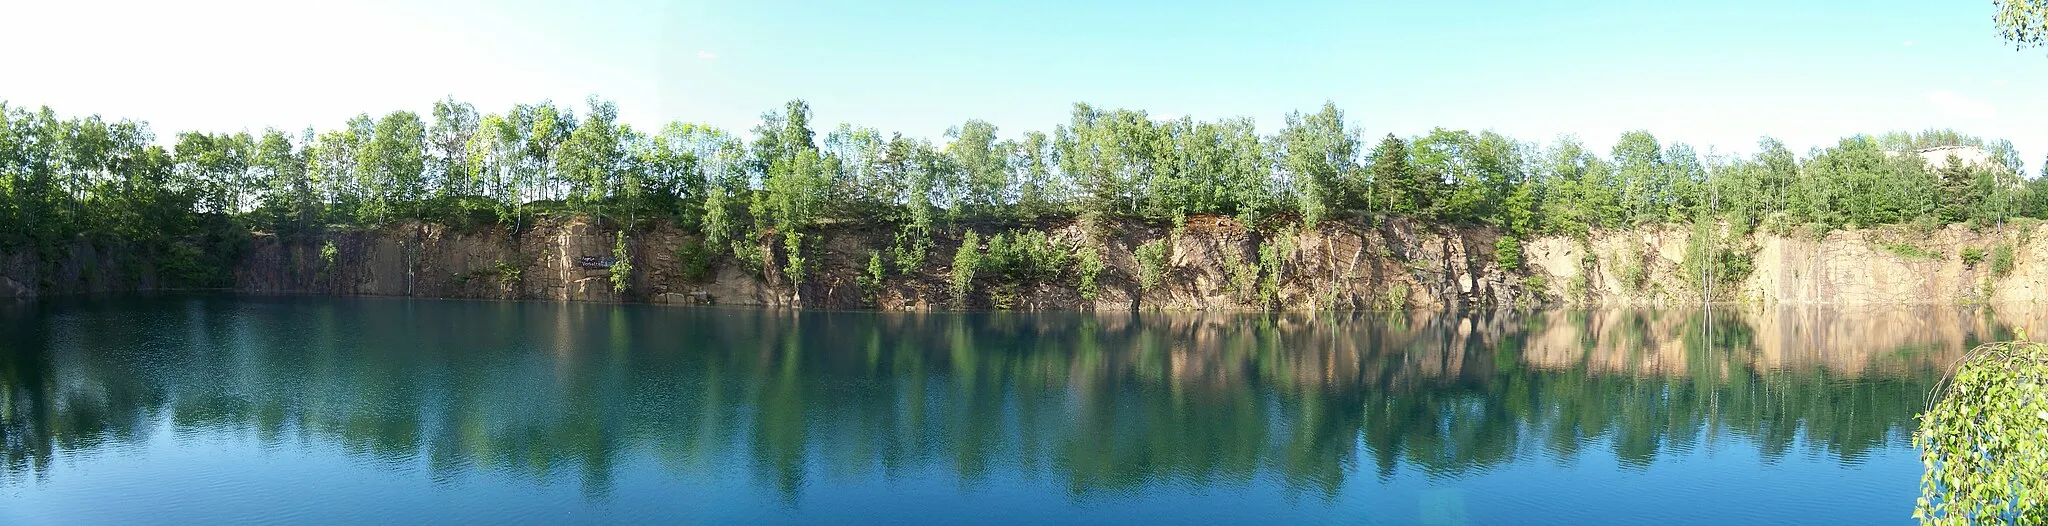 Photo showing: Ein durch Quarzporphyrabbau (Haasenbrucch) entstandener See in den Hohburger Bergen im Landkreis Leipzig (Sachsen) zwischen Kleinzschepa und Röcknitz; in der Nähe von Eilenburg und Wurzen